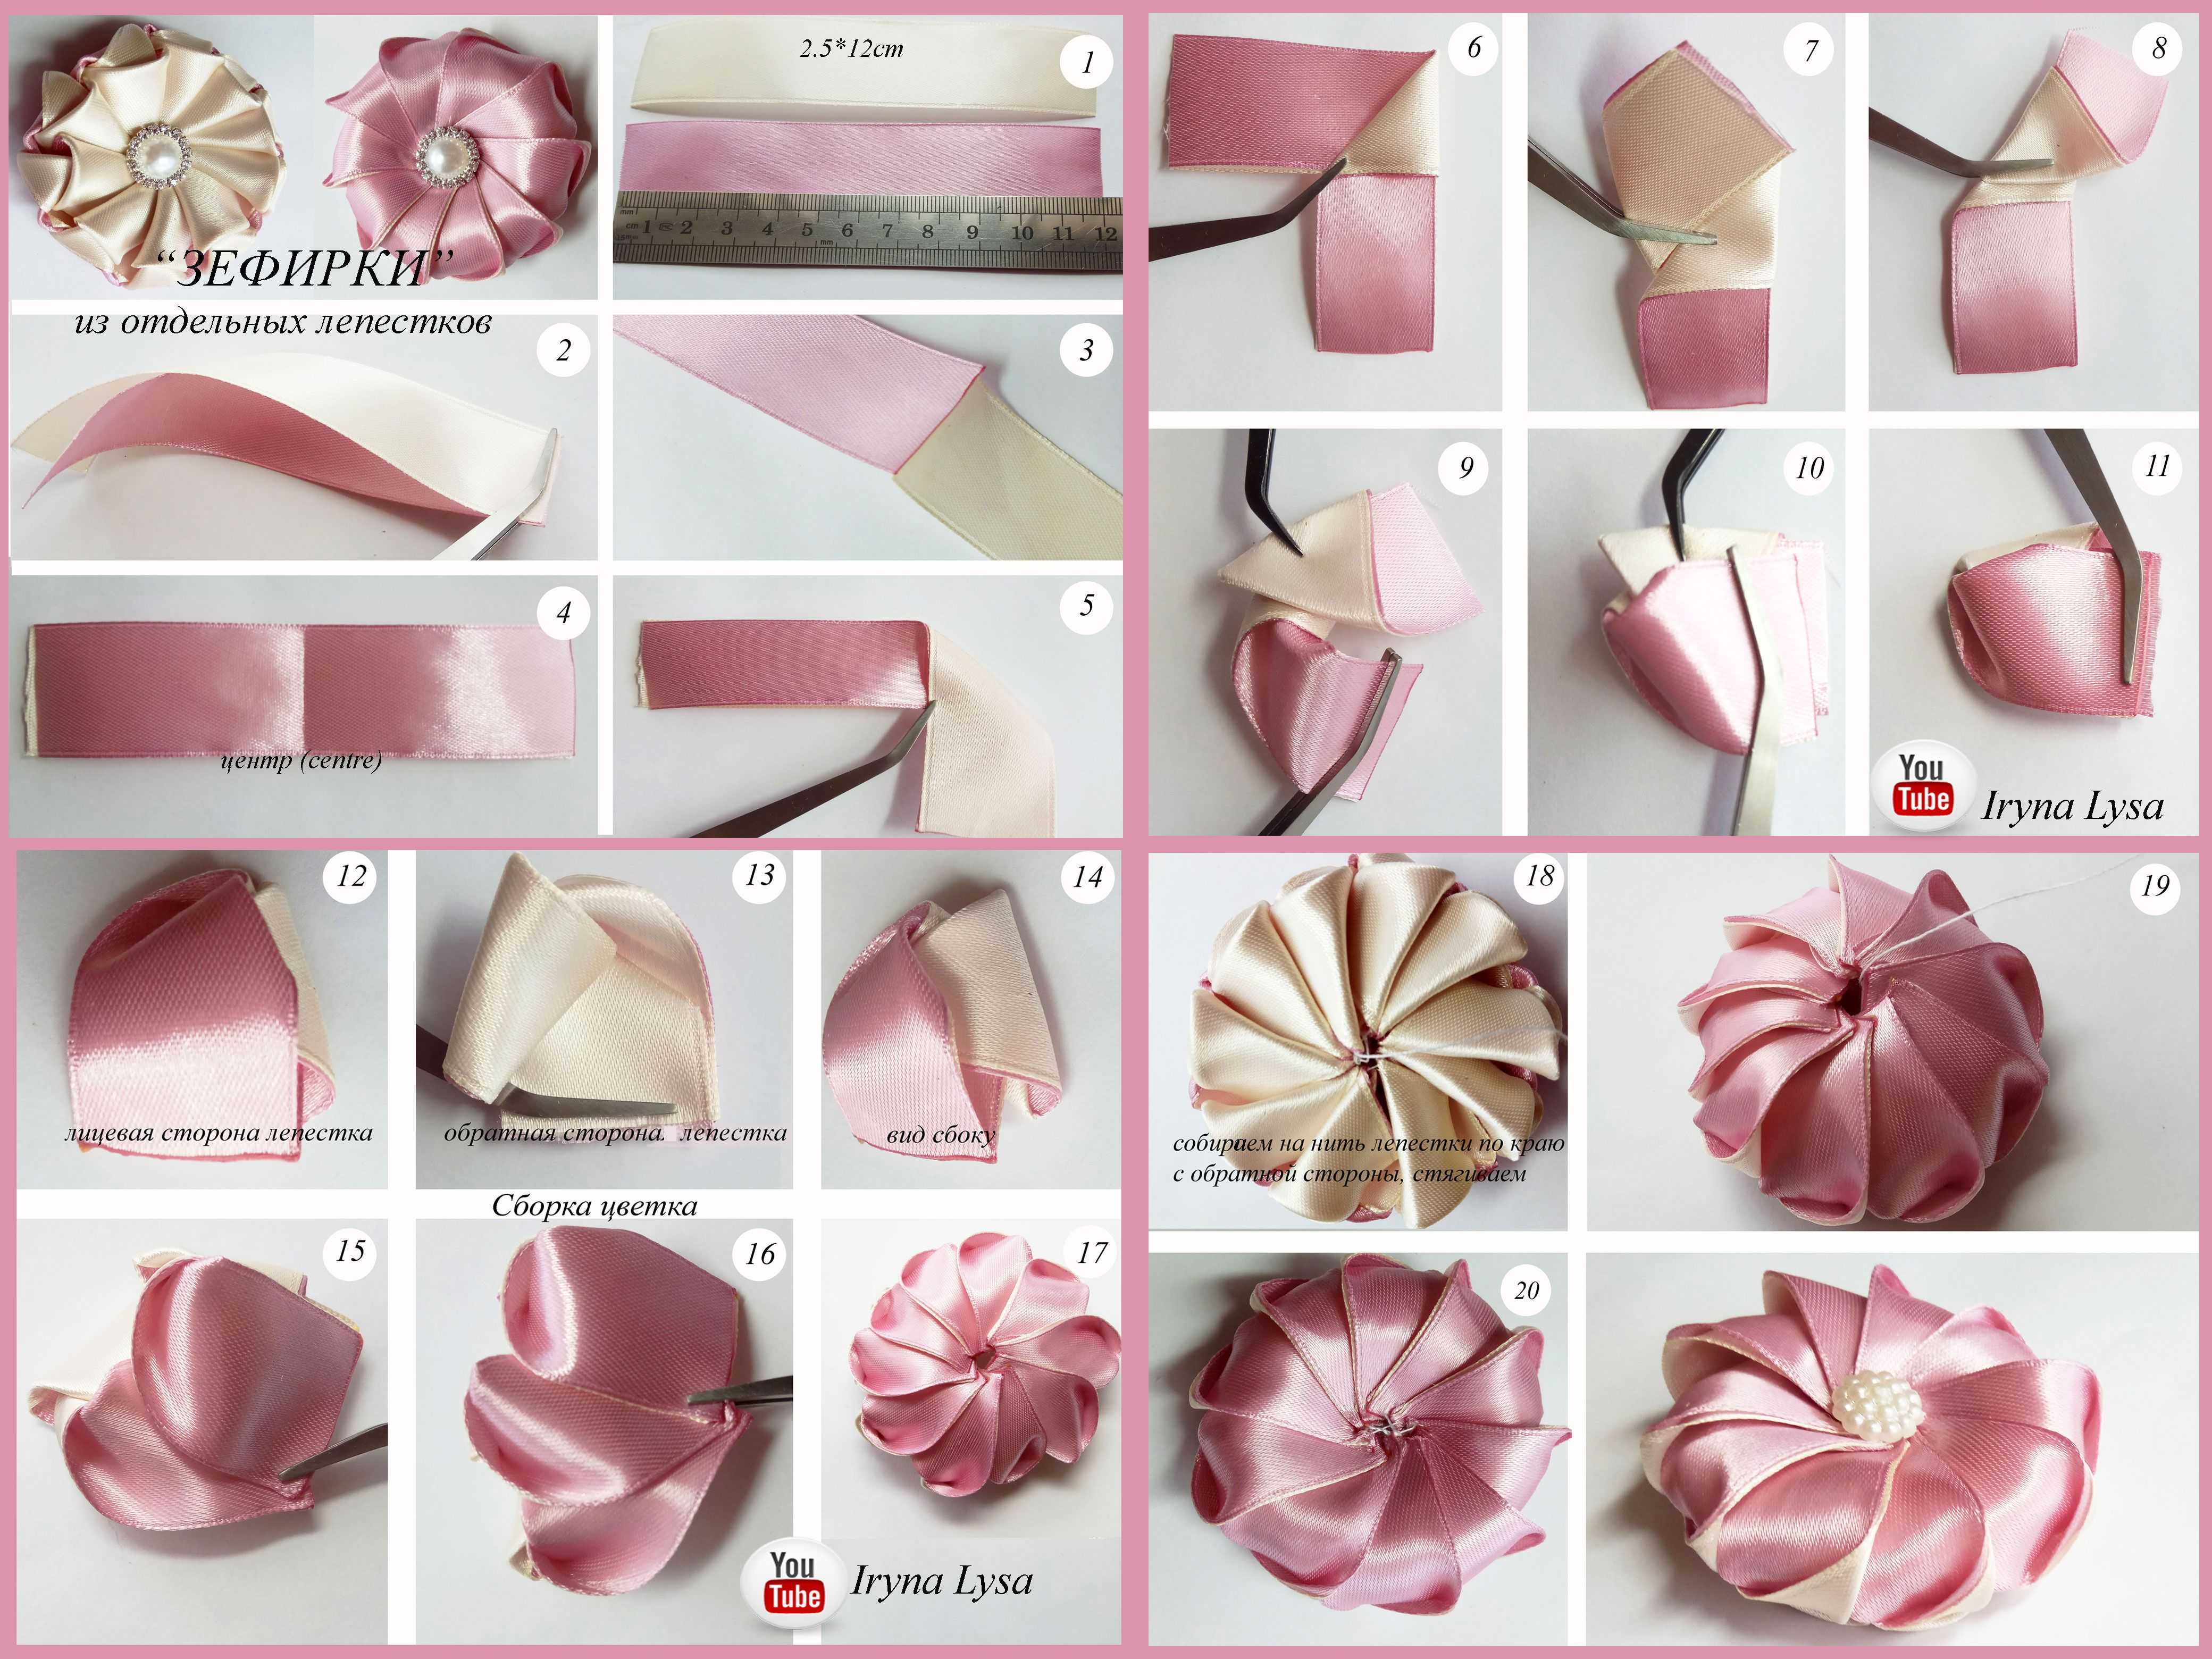 Технологии изготовления и варианты использования цветов из атласных лент Стандартный набор материалов, необходимых для рукоделия Фото примеры цветов